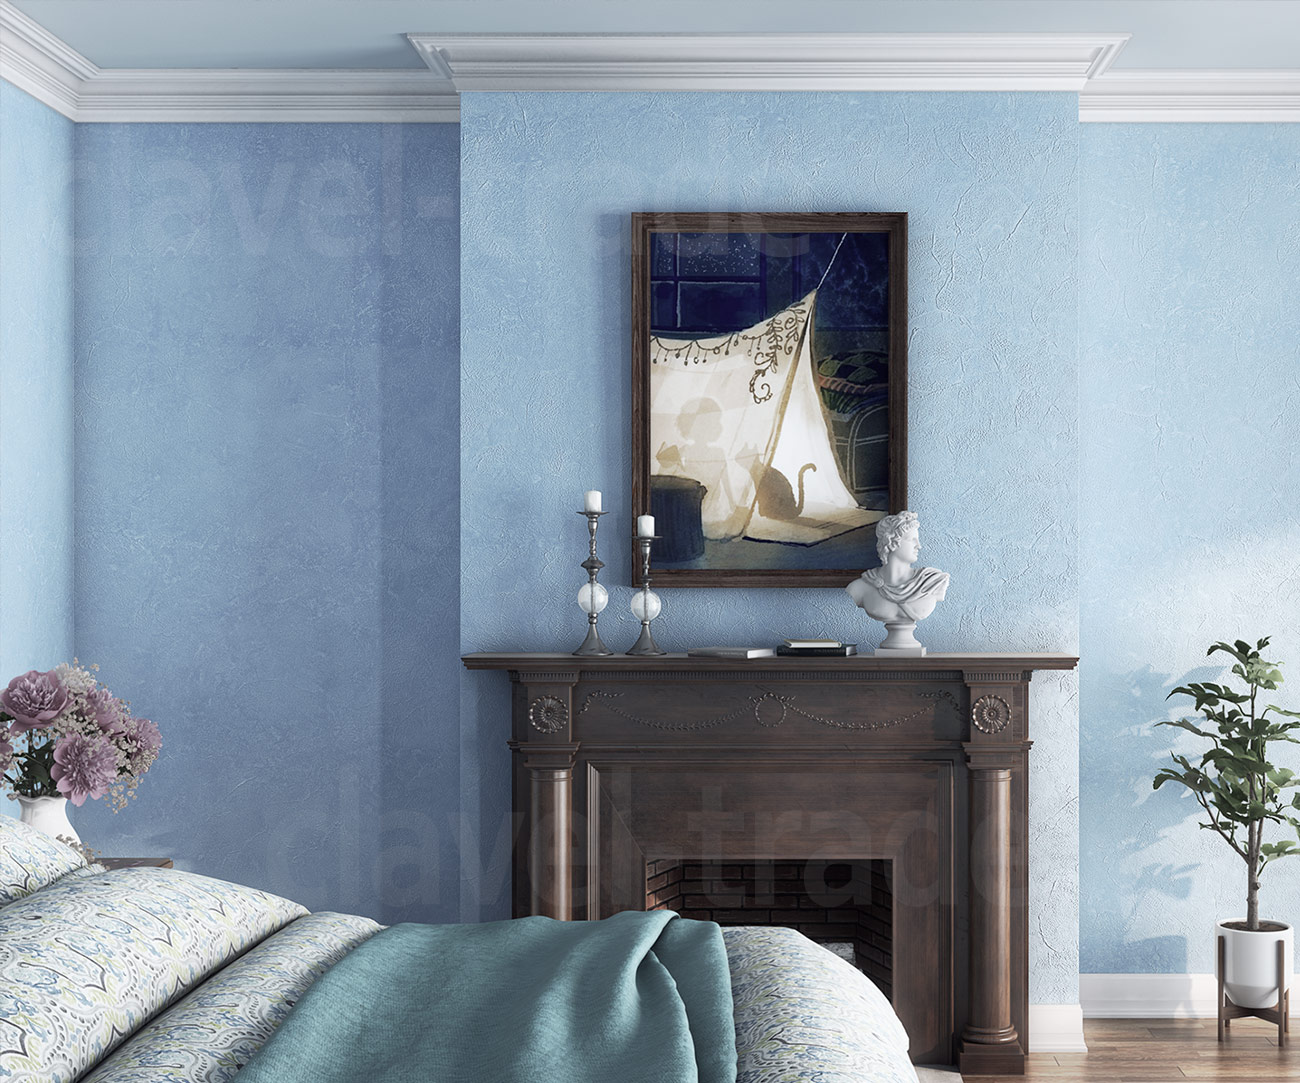 Декоративная штукатурка в спальне - покрытие Riviera с натуральными волокнами создает эффект потертых стен в стиле прованс